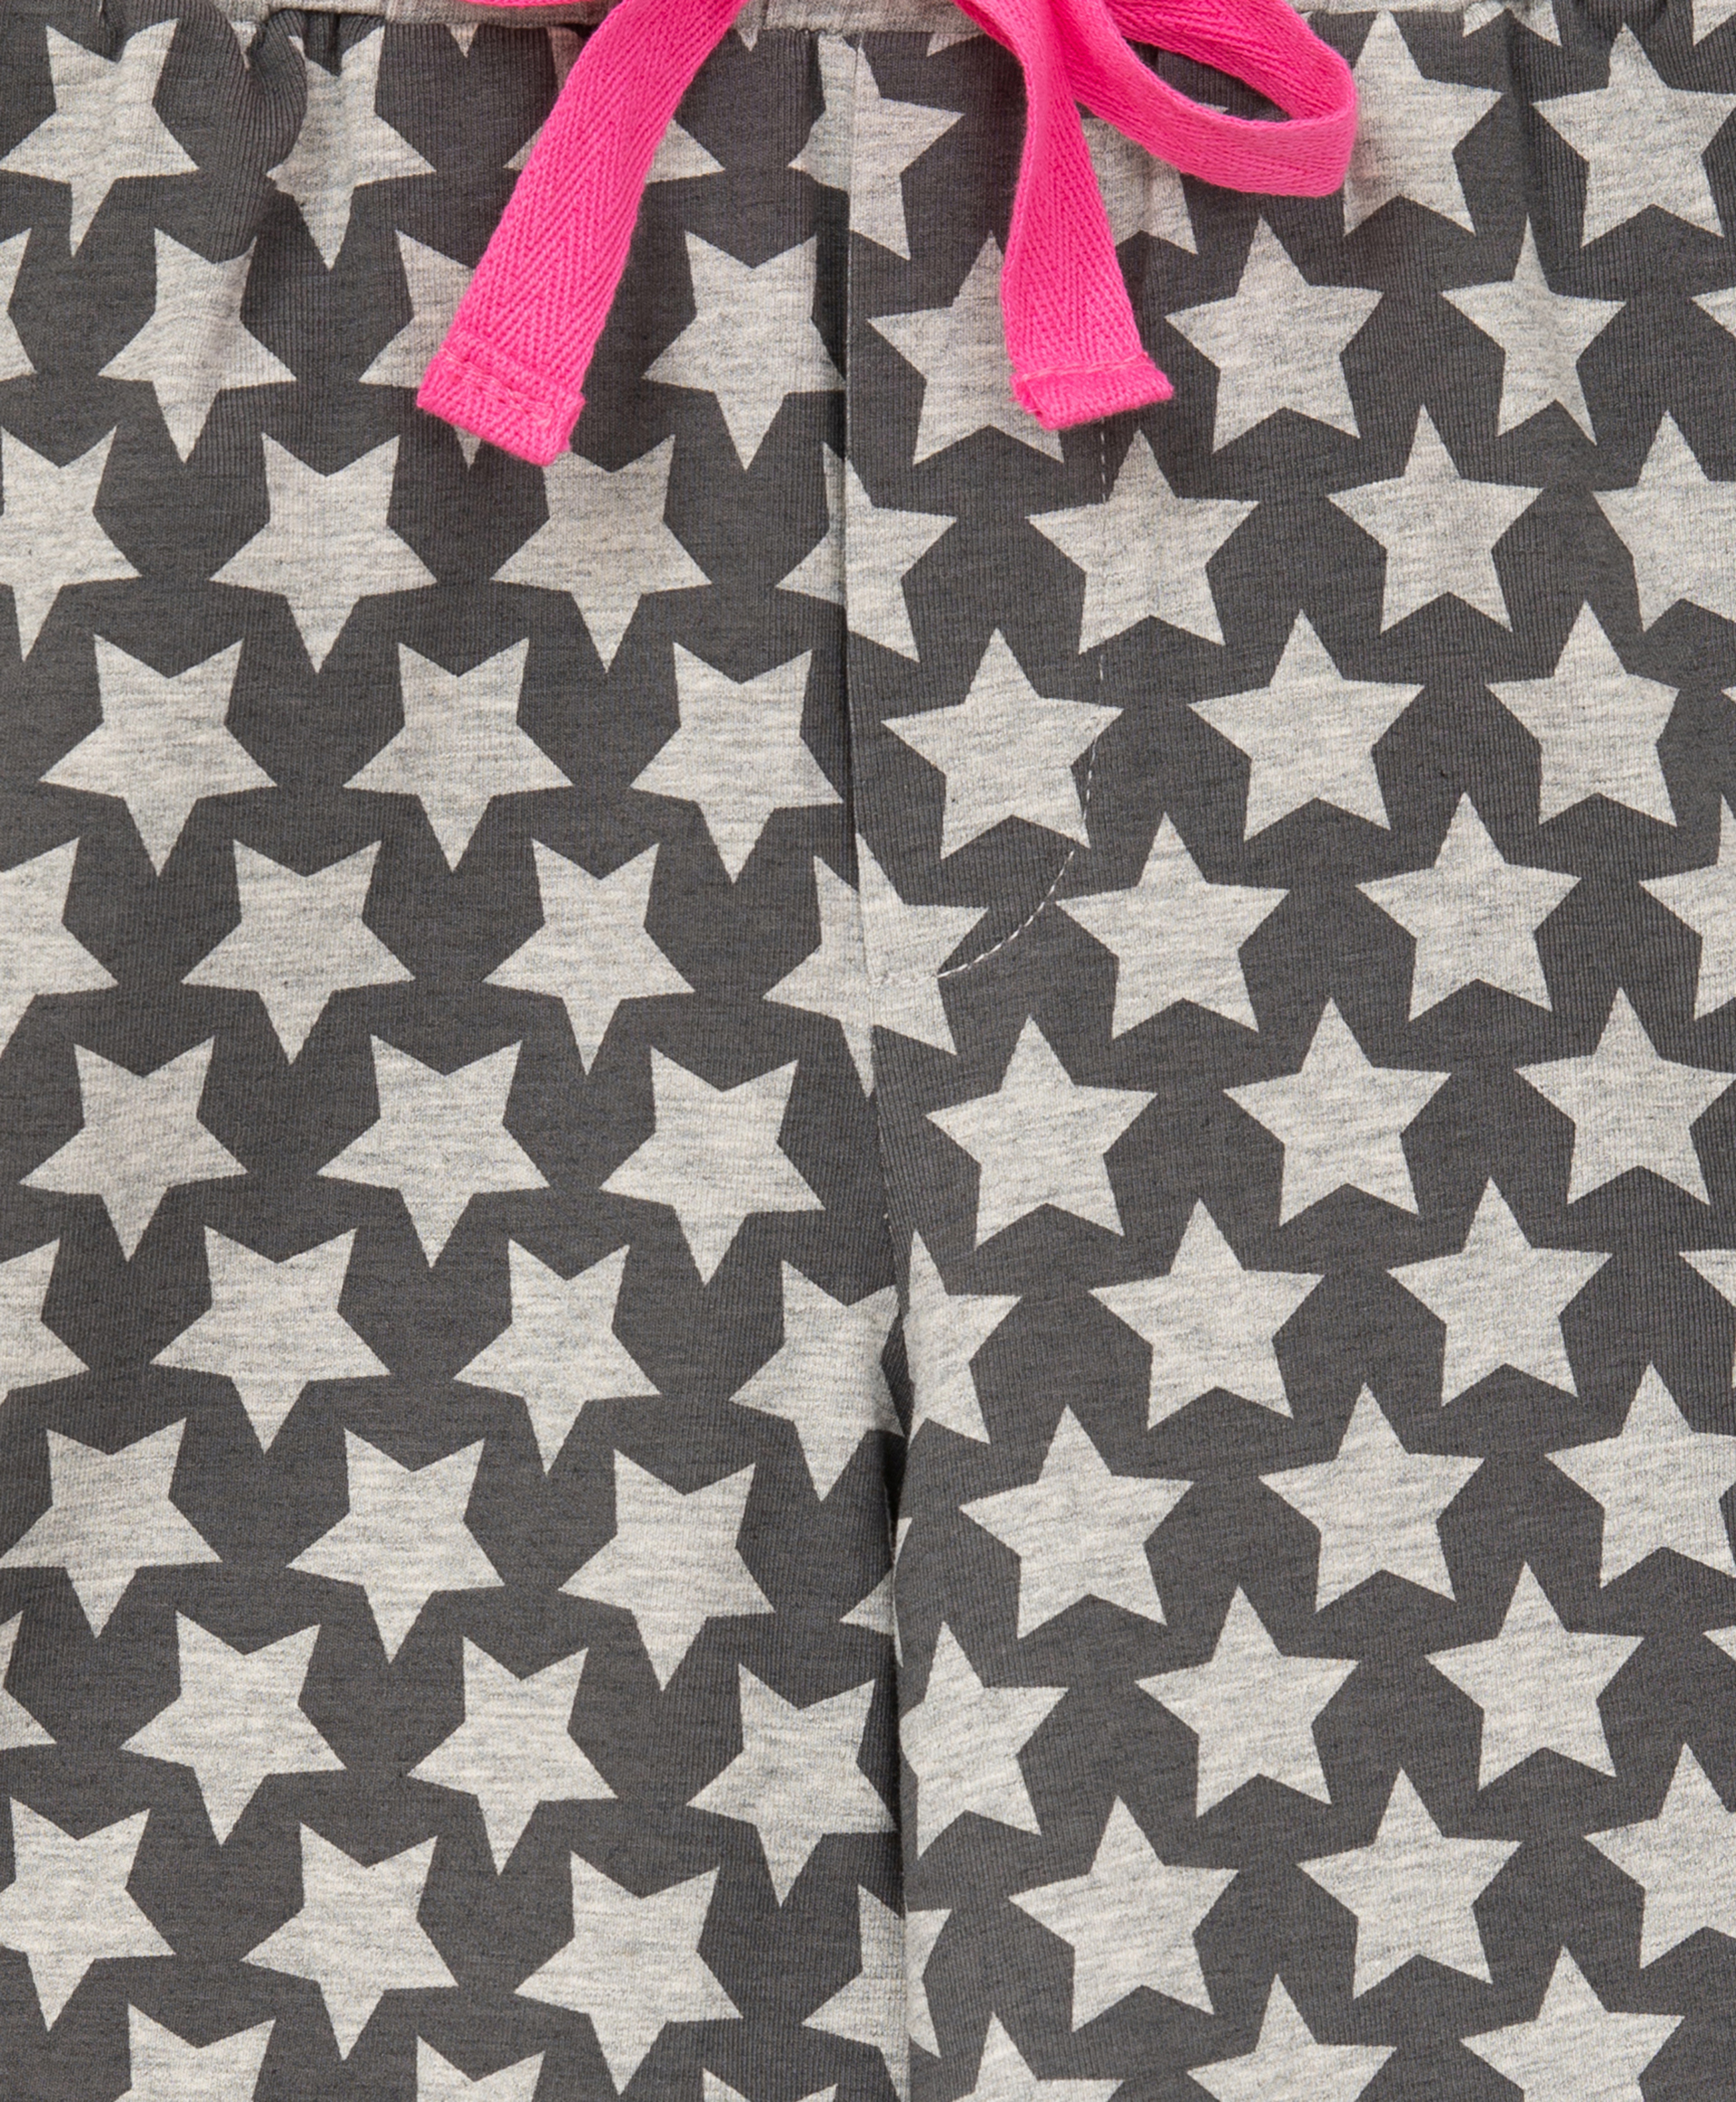 Пижама с принтом розовая Gulliver 22100GC9701, размер 158-164, цвет розовый - фото 5